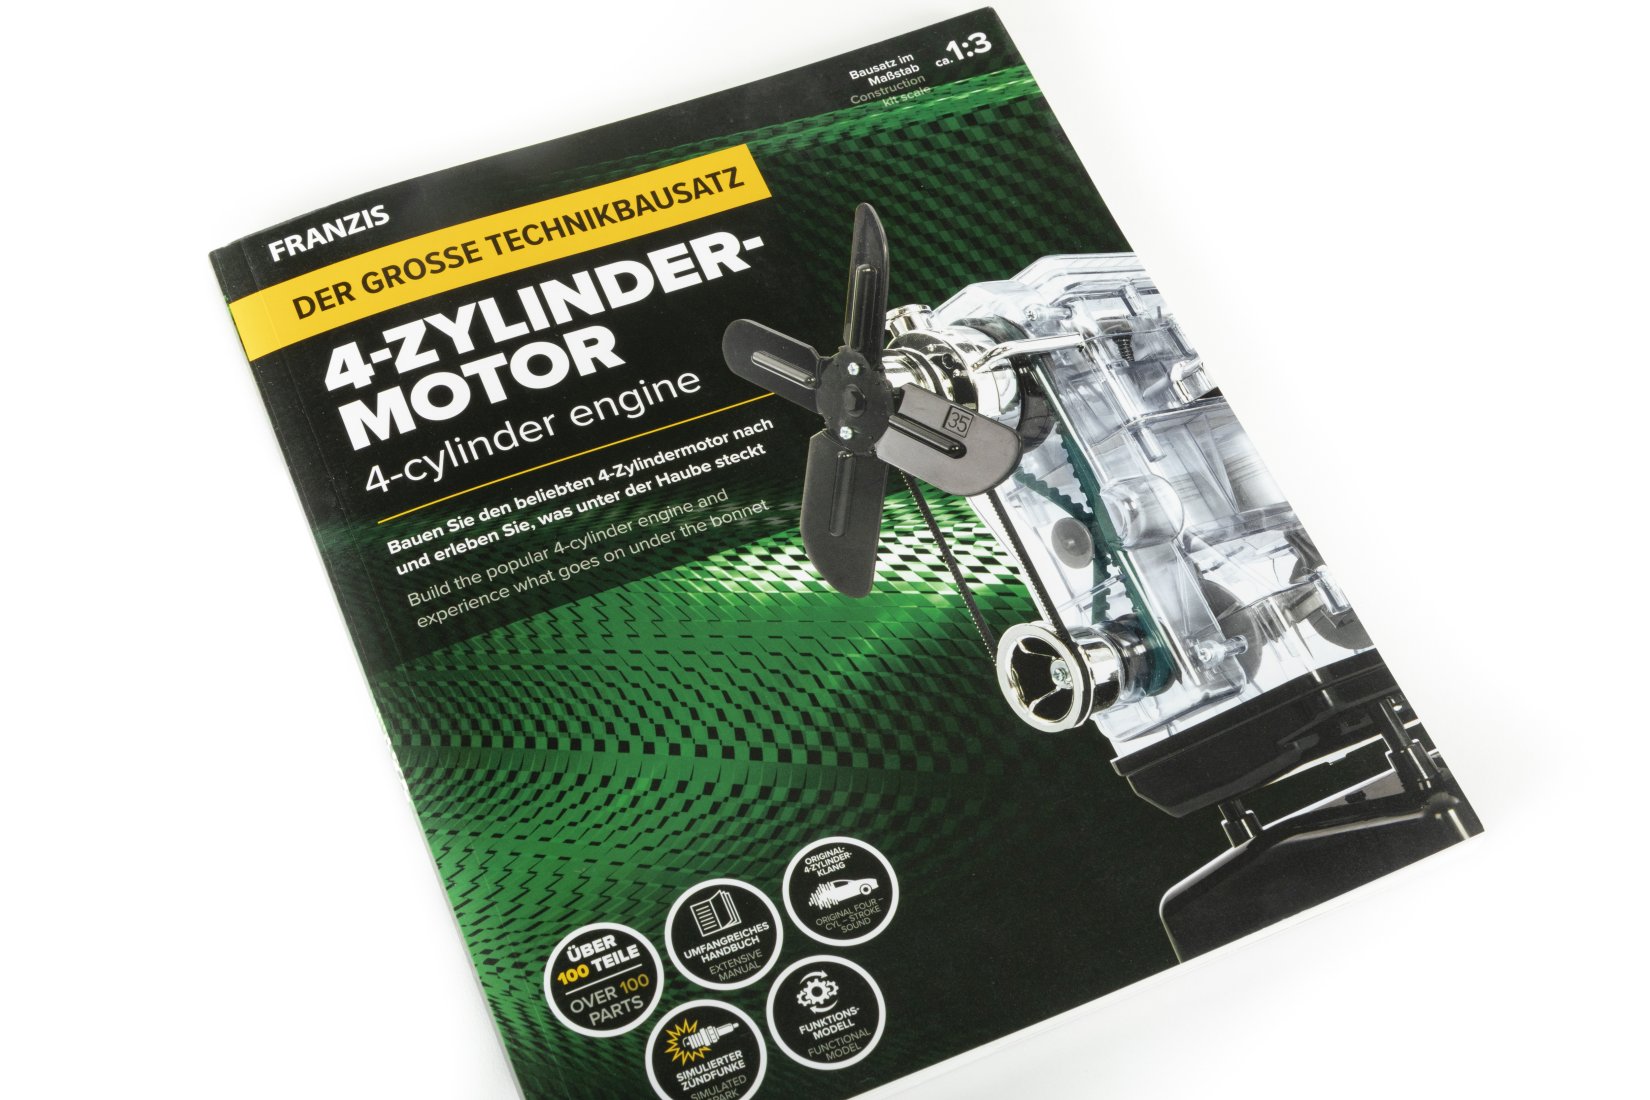 Bausatz 4-Zylinder-Motor - Edition 2021